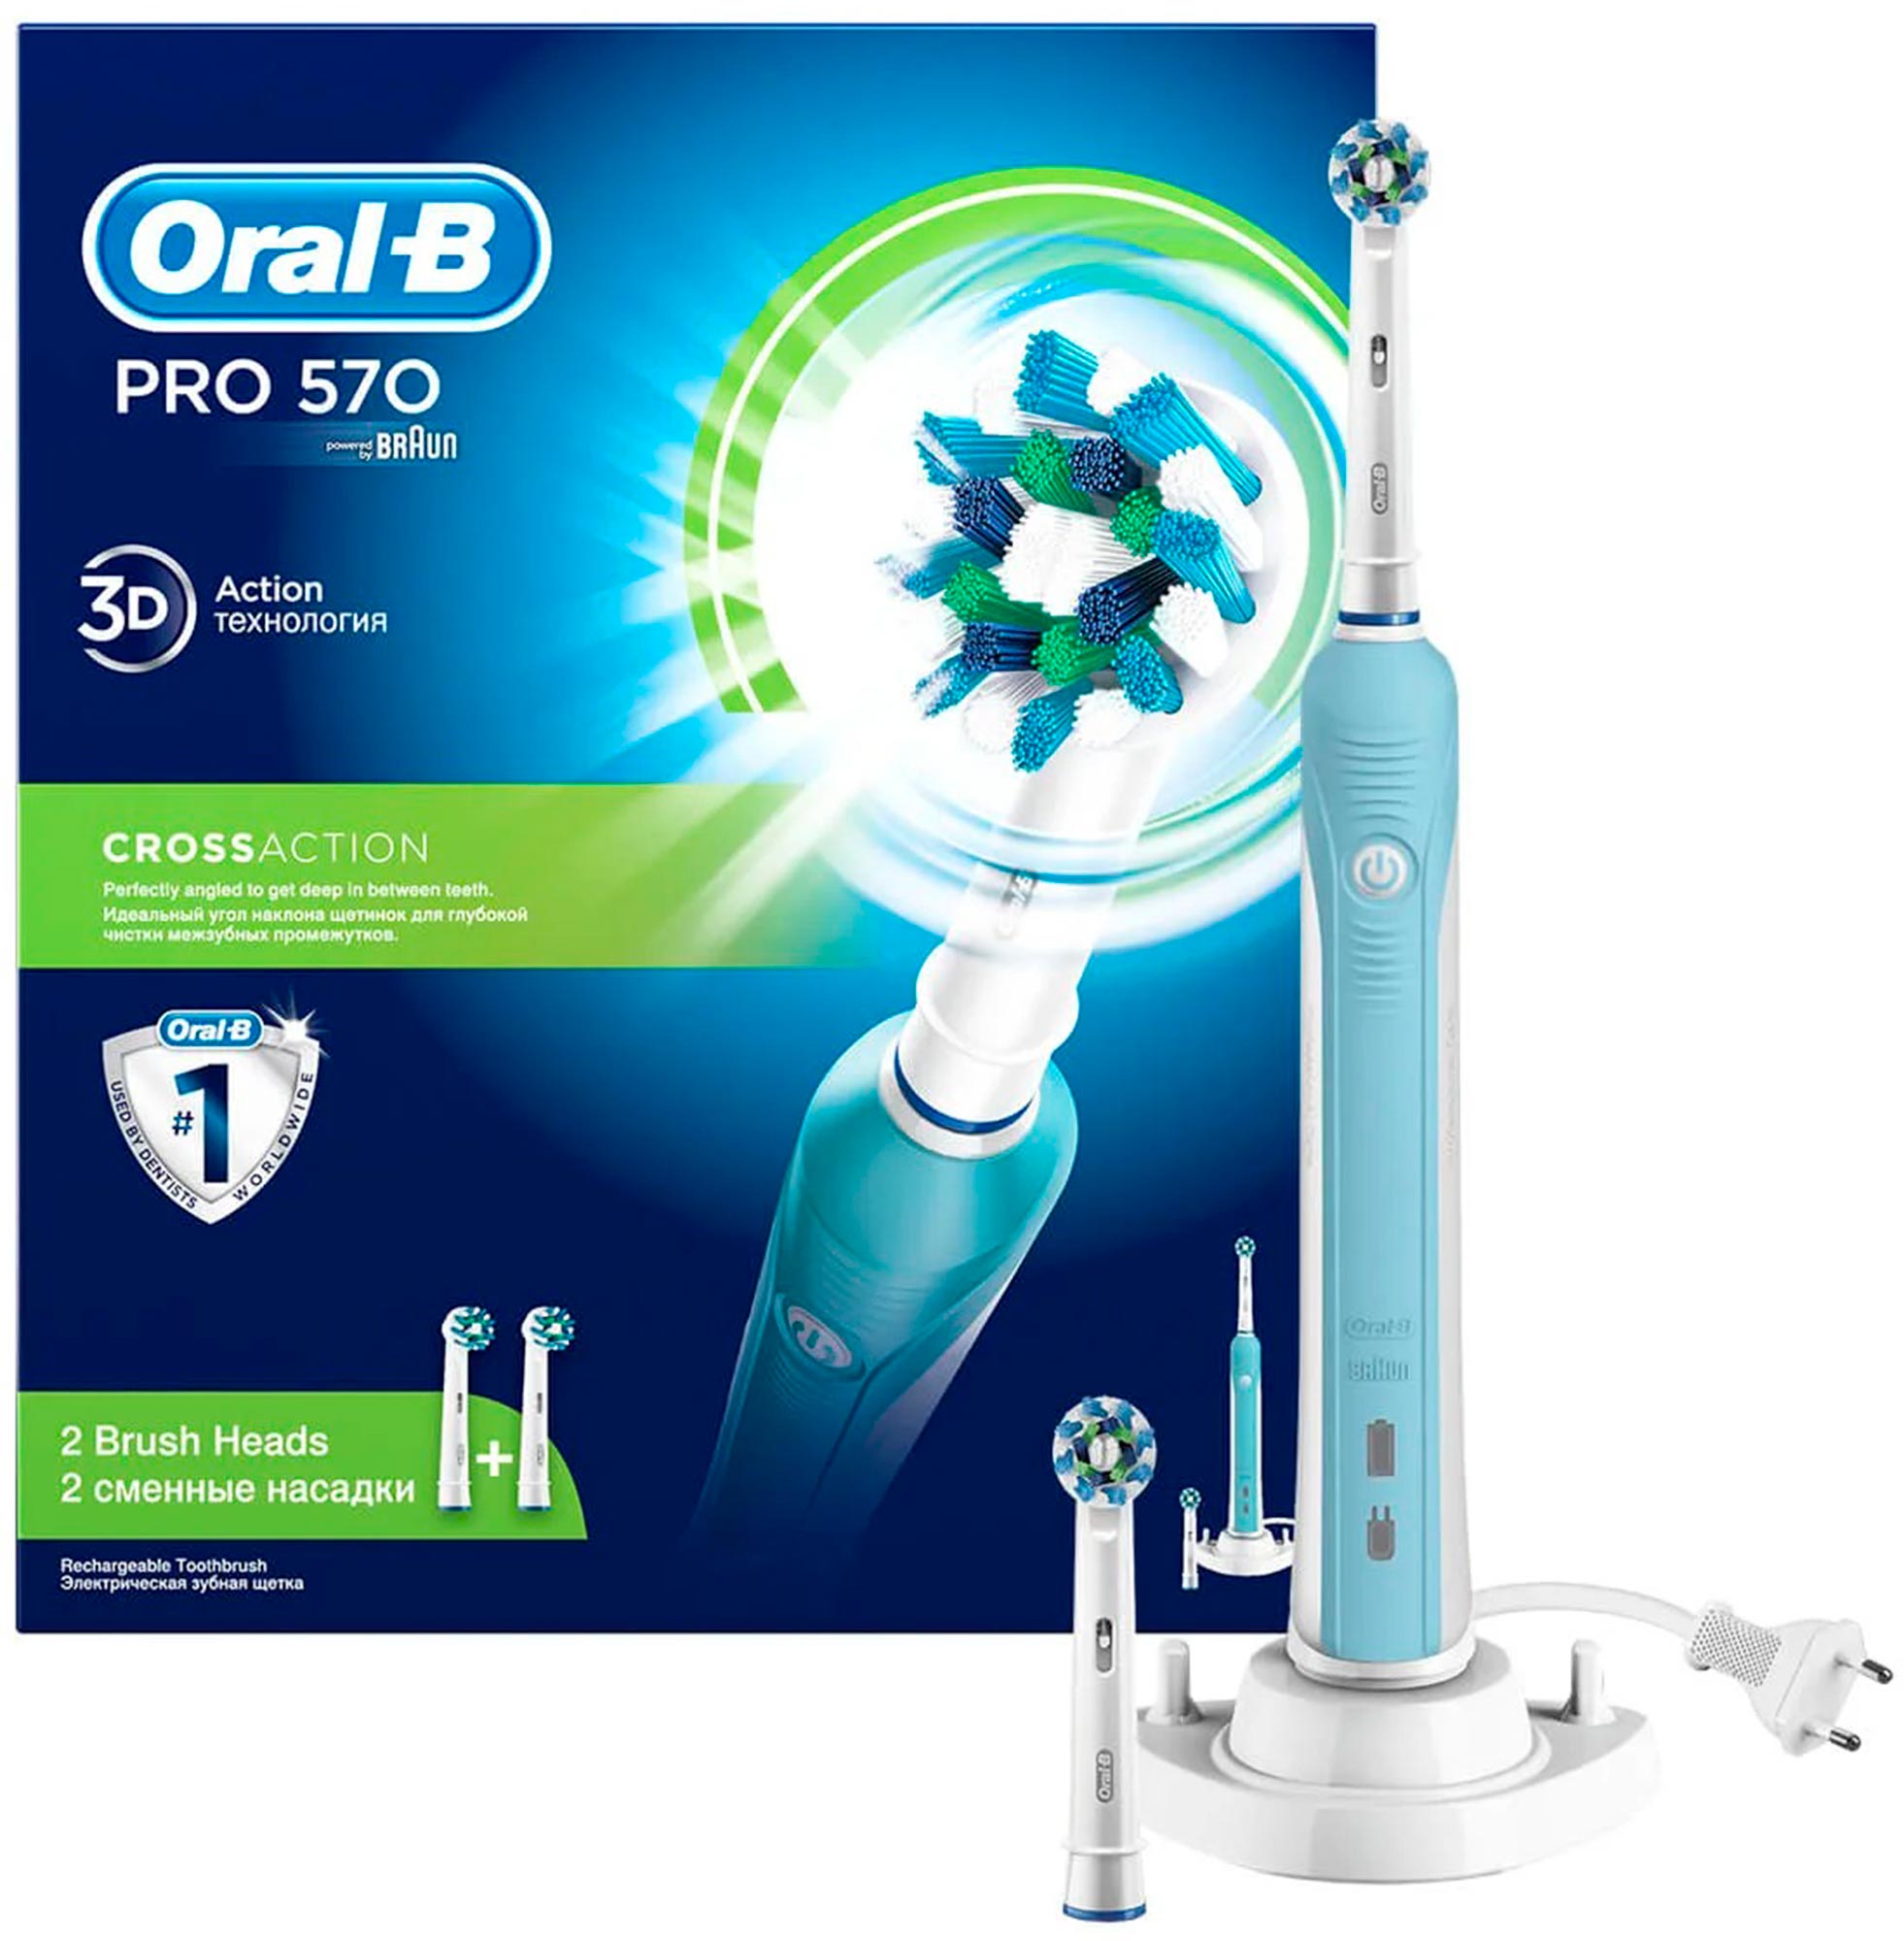 Купить Электрическая зубная щетка Oral-B PRO 570 D16 Cross Action, Braun